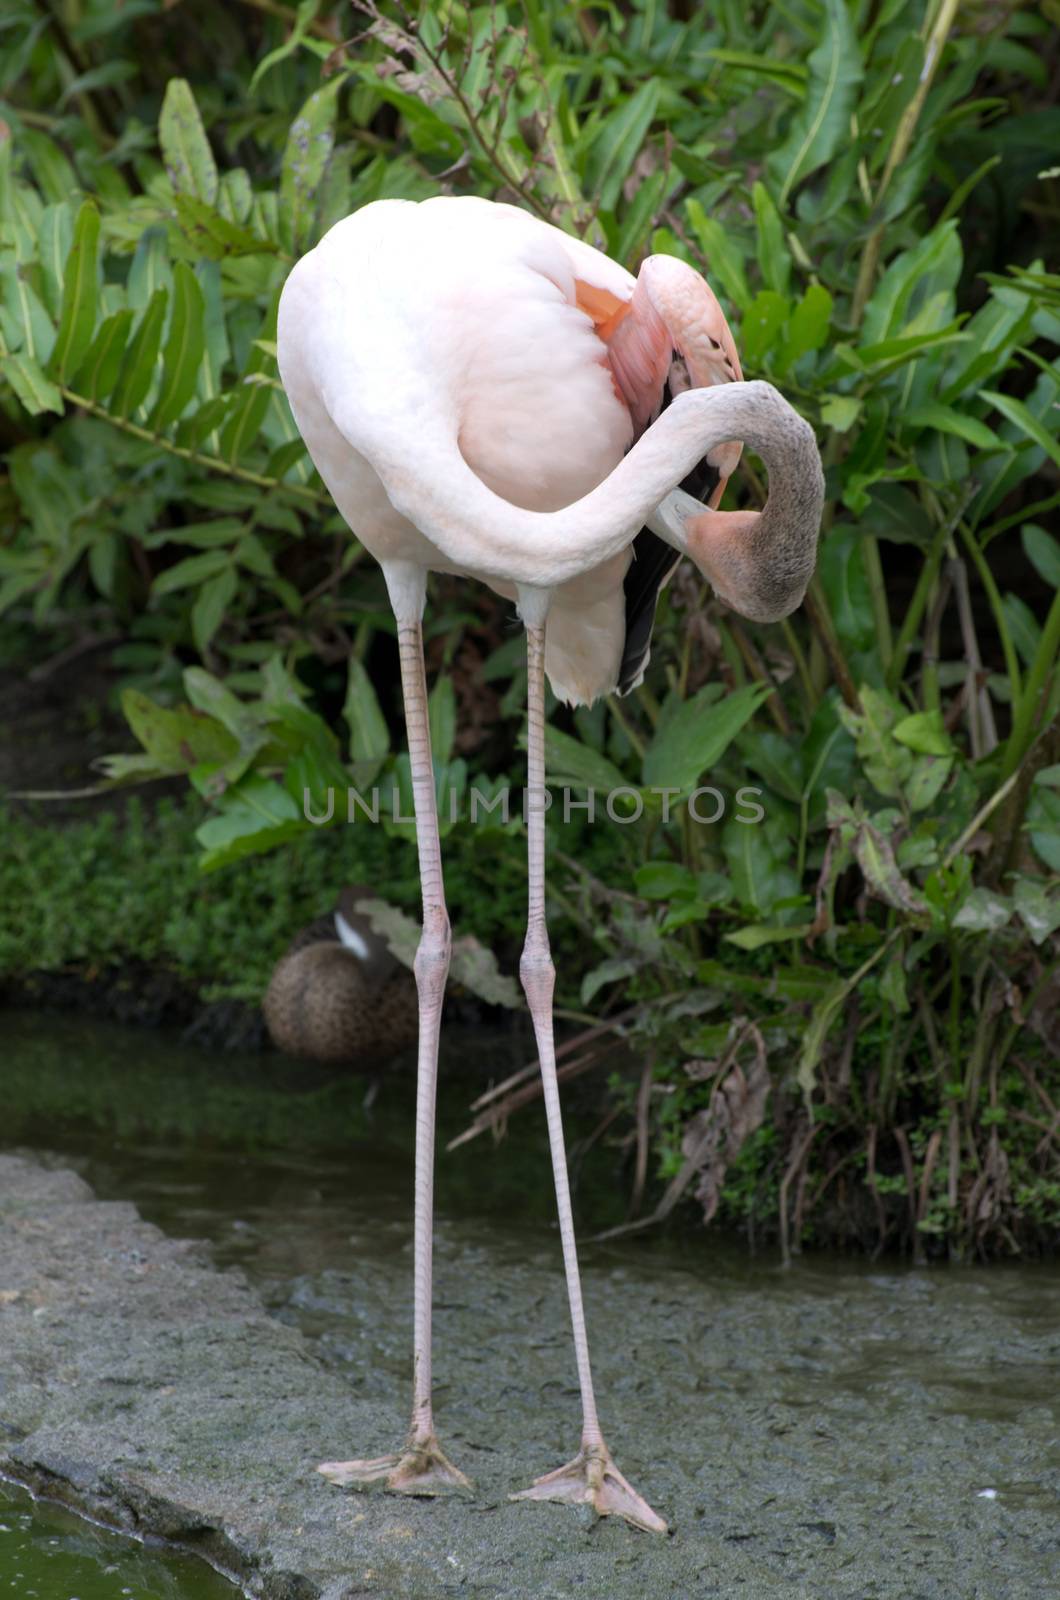  flamingos  by Pakhnyushchyy